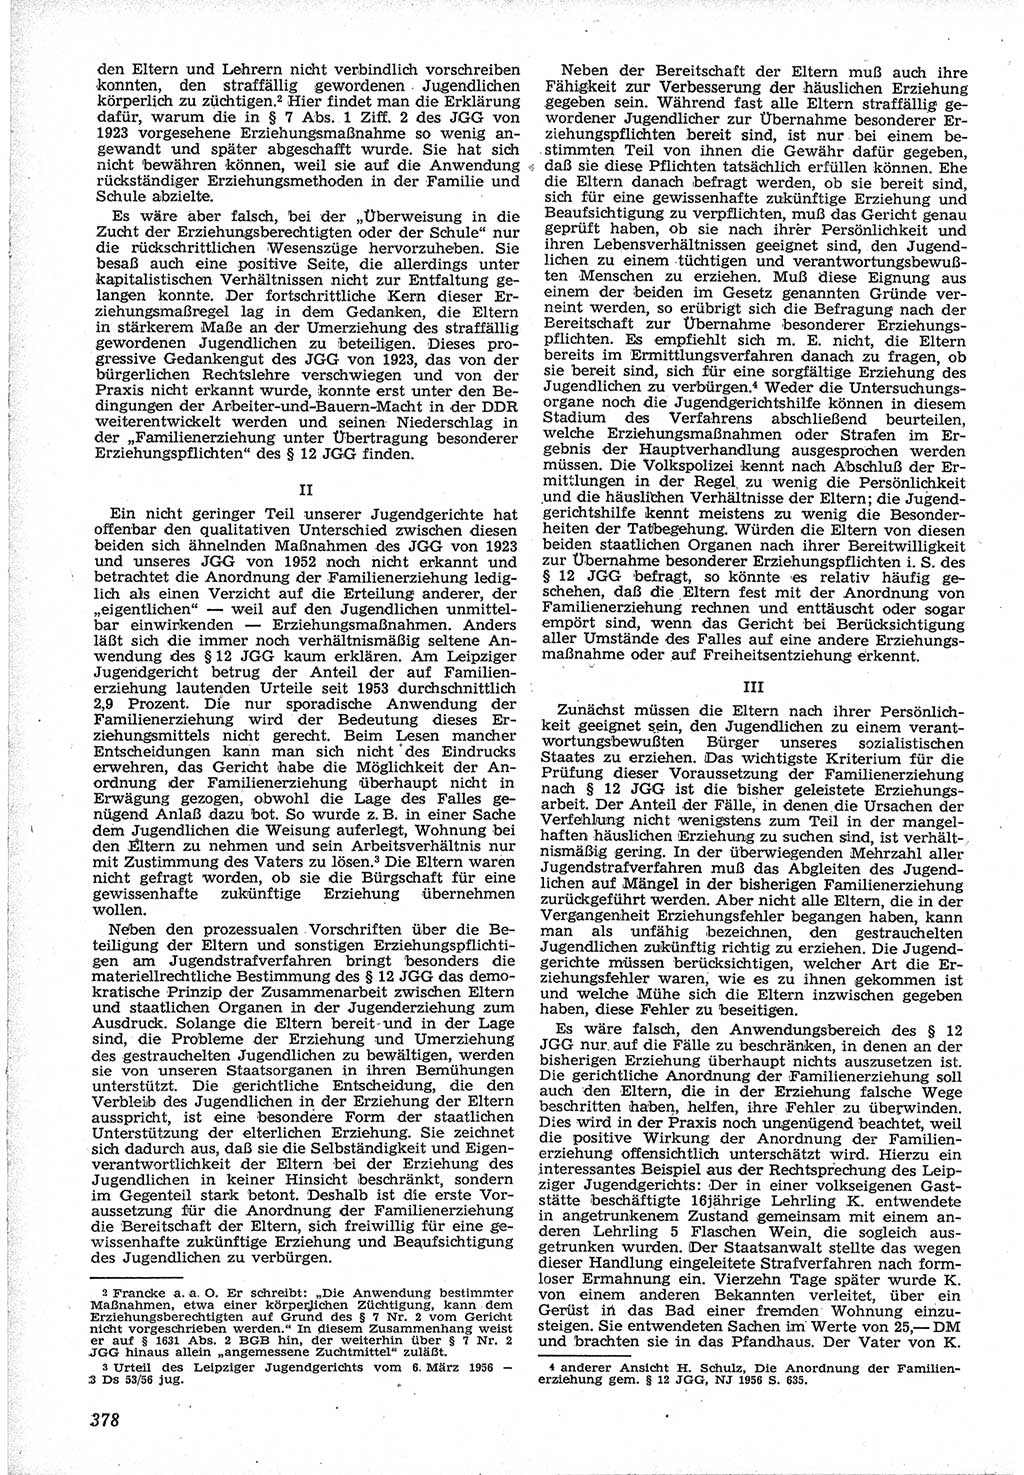 Neue Justiz (NJ), Zeitschrift für Recht und Rechtswissenschaft [Deutsche Demokratische Republik (DDR)], 12. Jahrgang 1958, Seite 378 (NJ DDR 1958, S. 378)